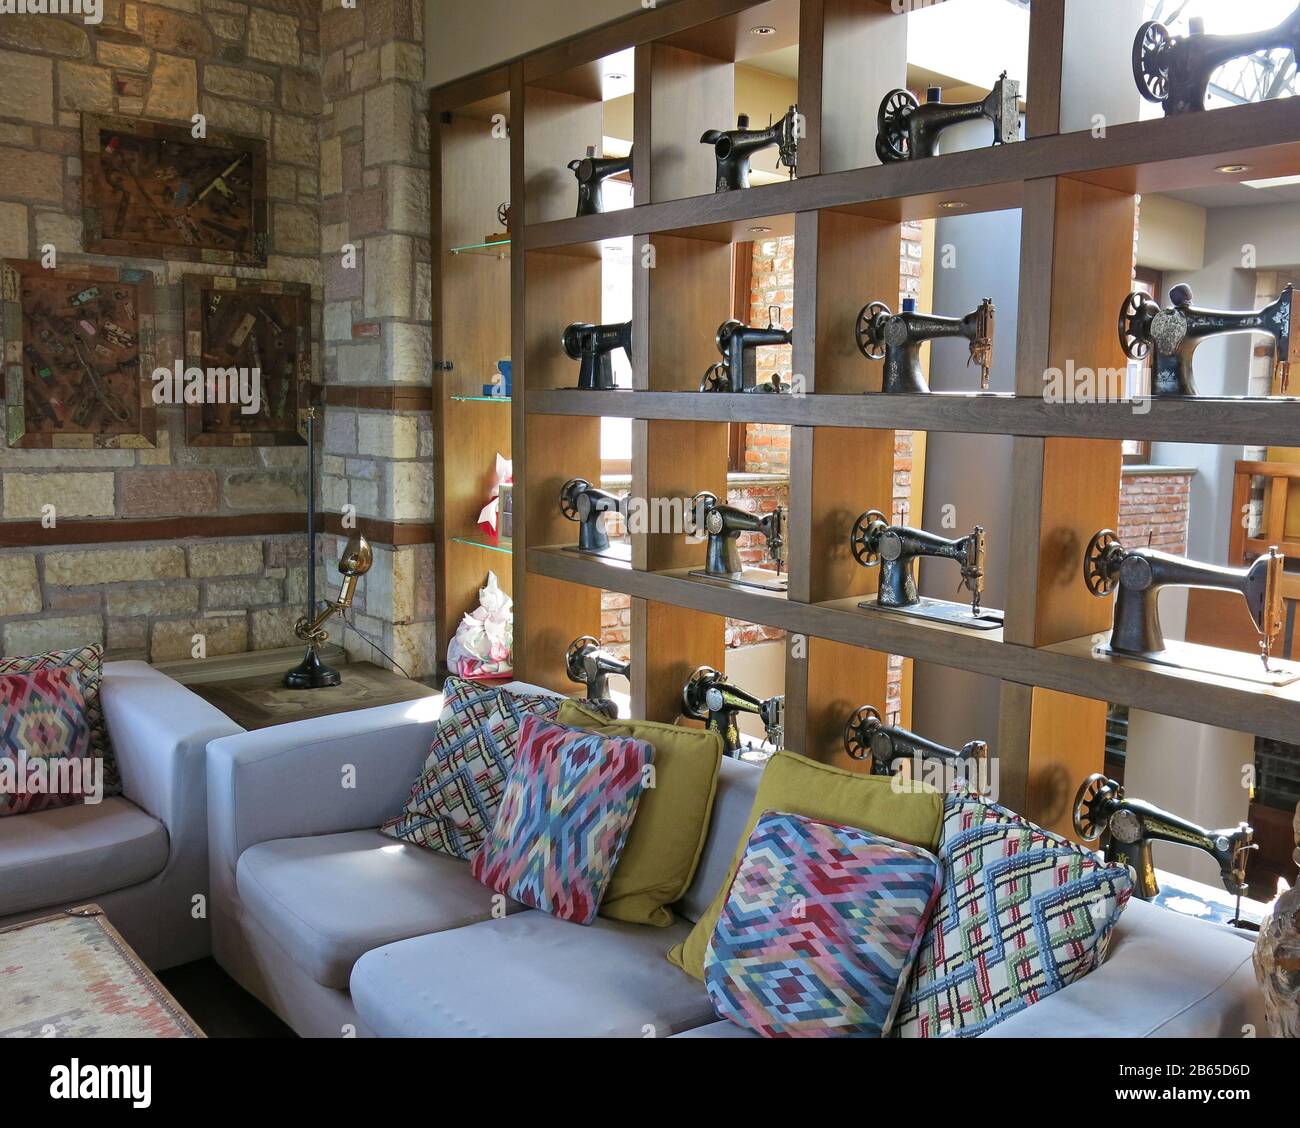 Vista parziale del soggiorno decorato con una collezione di macchine da cucire vintage su una libreria e divani colorati con cuscini. Foto Stock